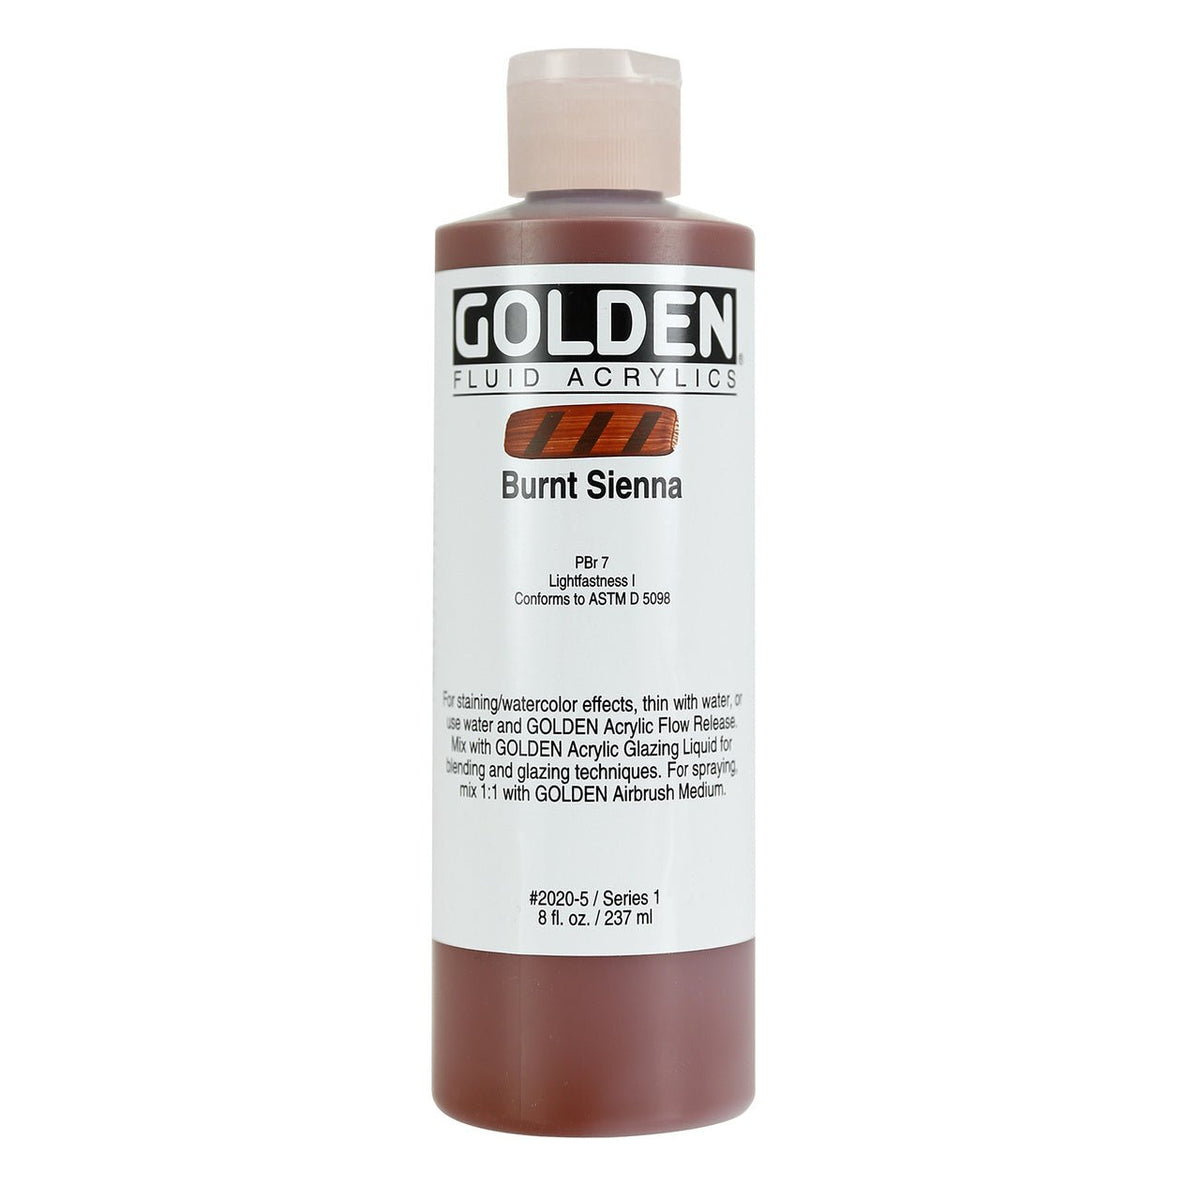 Golden Fluid Acrylic Burnt Sienna 8 oz - merriartist.com